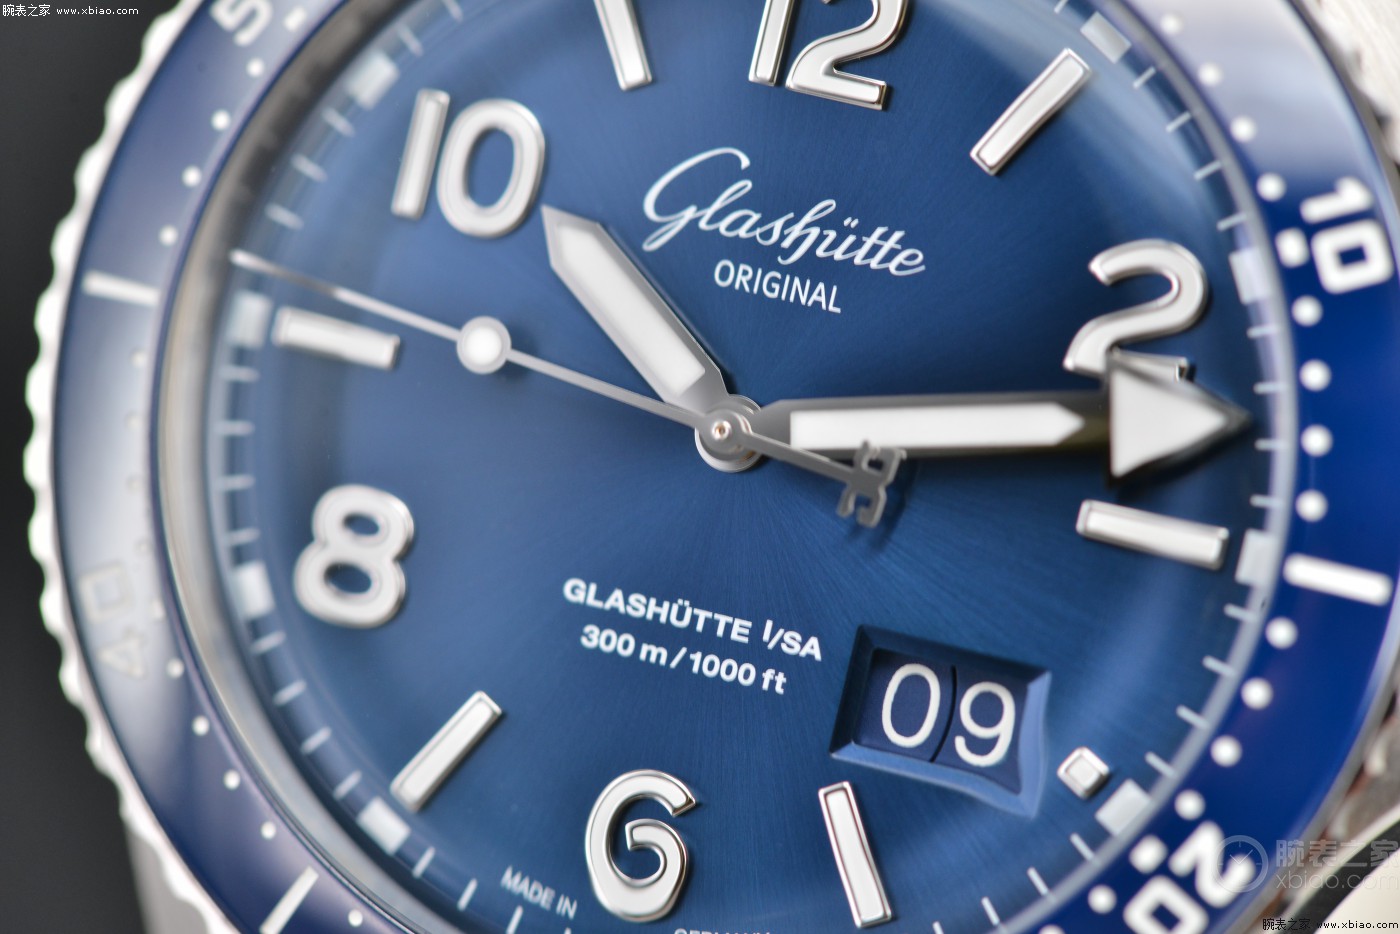 二十七]专业与好用的完美融合 品评格拉苏蒂原创大日历SeaQ腕表